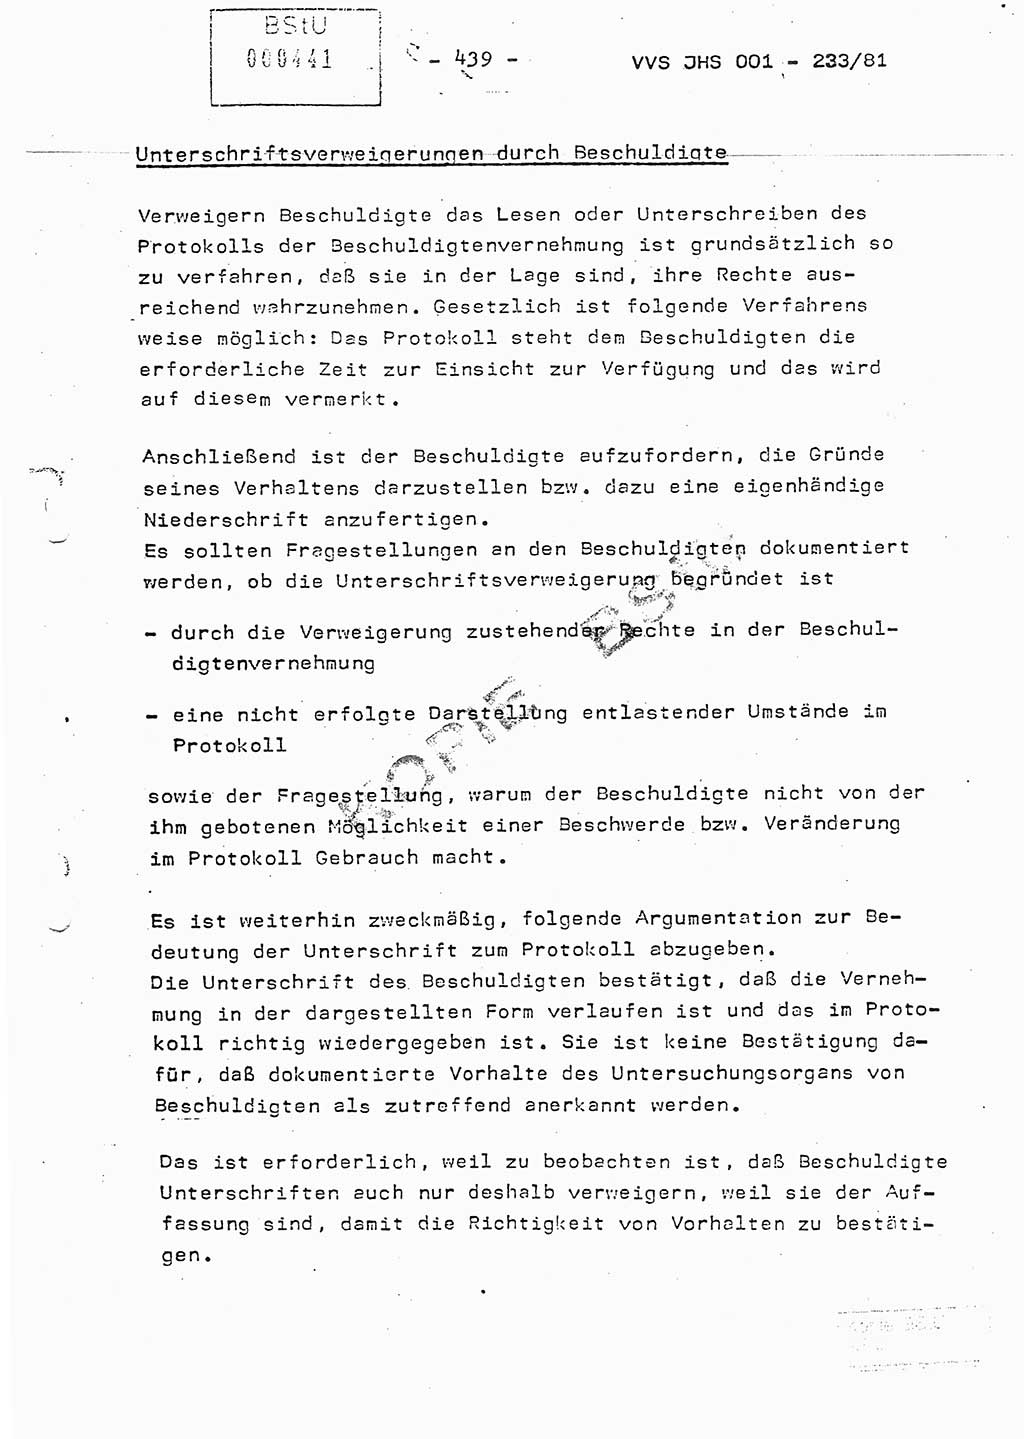 Dissertation Oberstleutnant Horst Zank (JHS), Oberstleutnant Dr. Karl-Heinz Knoblauch (JHS), Oberstleutnant Gustav-Adolf Kowalewski (HA Ⅸ), Oberstleutnant Wolfgang Plötner (HA Ⅸ), Ministerium für Staatssicherheit (MfS) [Deutsche Demokratische Republik (DDR)], Juristische Hochschule (JHS), Vertrauliche Verschlußsache (VVS) o001-233/81, Potsdam 1981, Blatt 439 (Diss. MfS DDR JHS VVS o001-233/81 1981, Bl. 439)